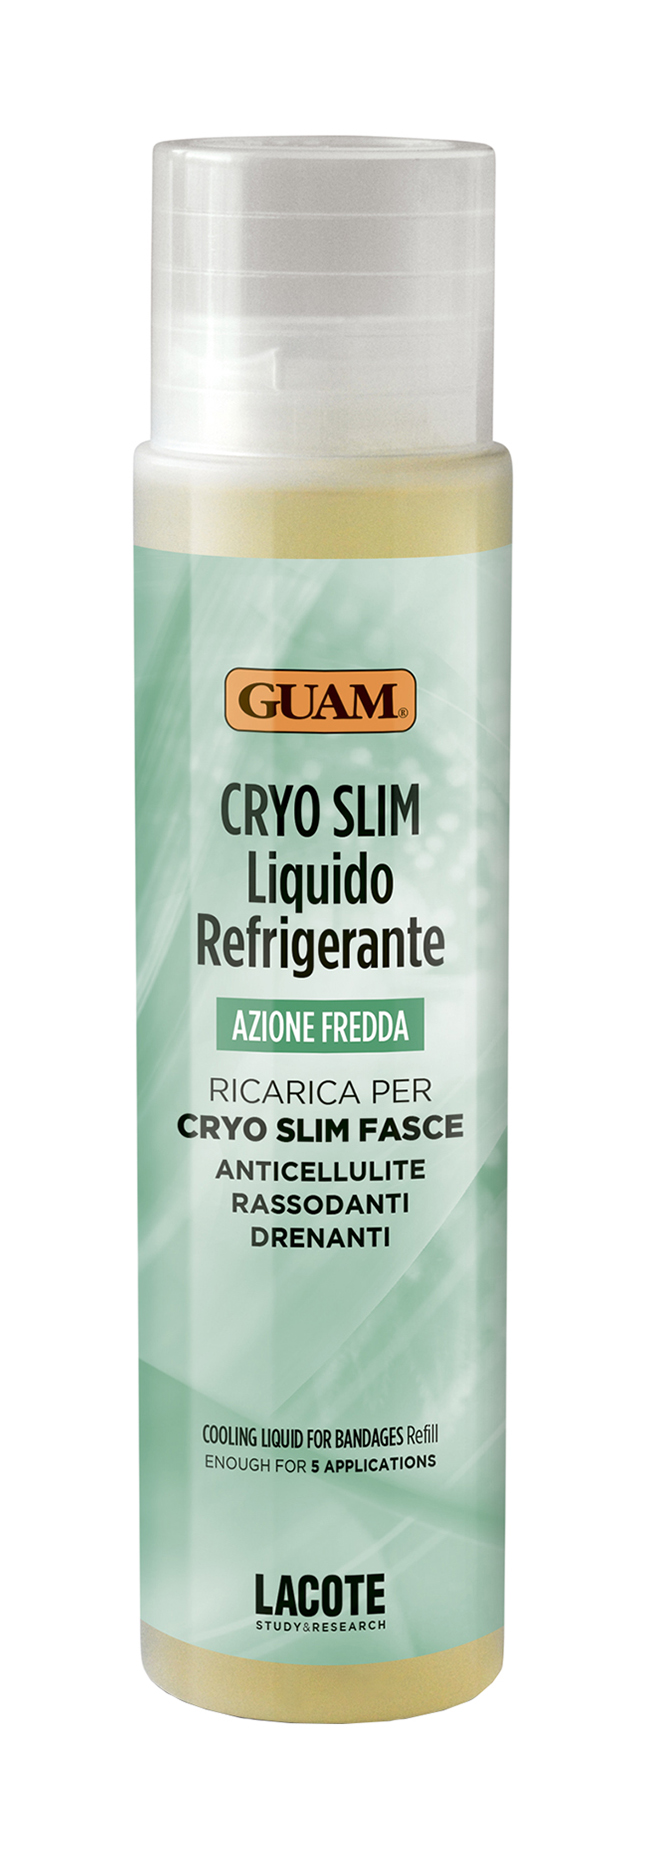 Жидкость для проведения процедуры бинтования Guam Azione Fredda Cryo Slim Fasce 250мл guam маска антицеллюлитная для живота и талии fanghi d alga 1000 г